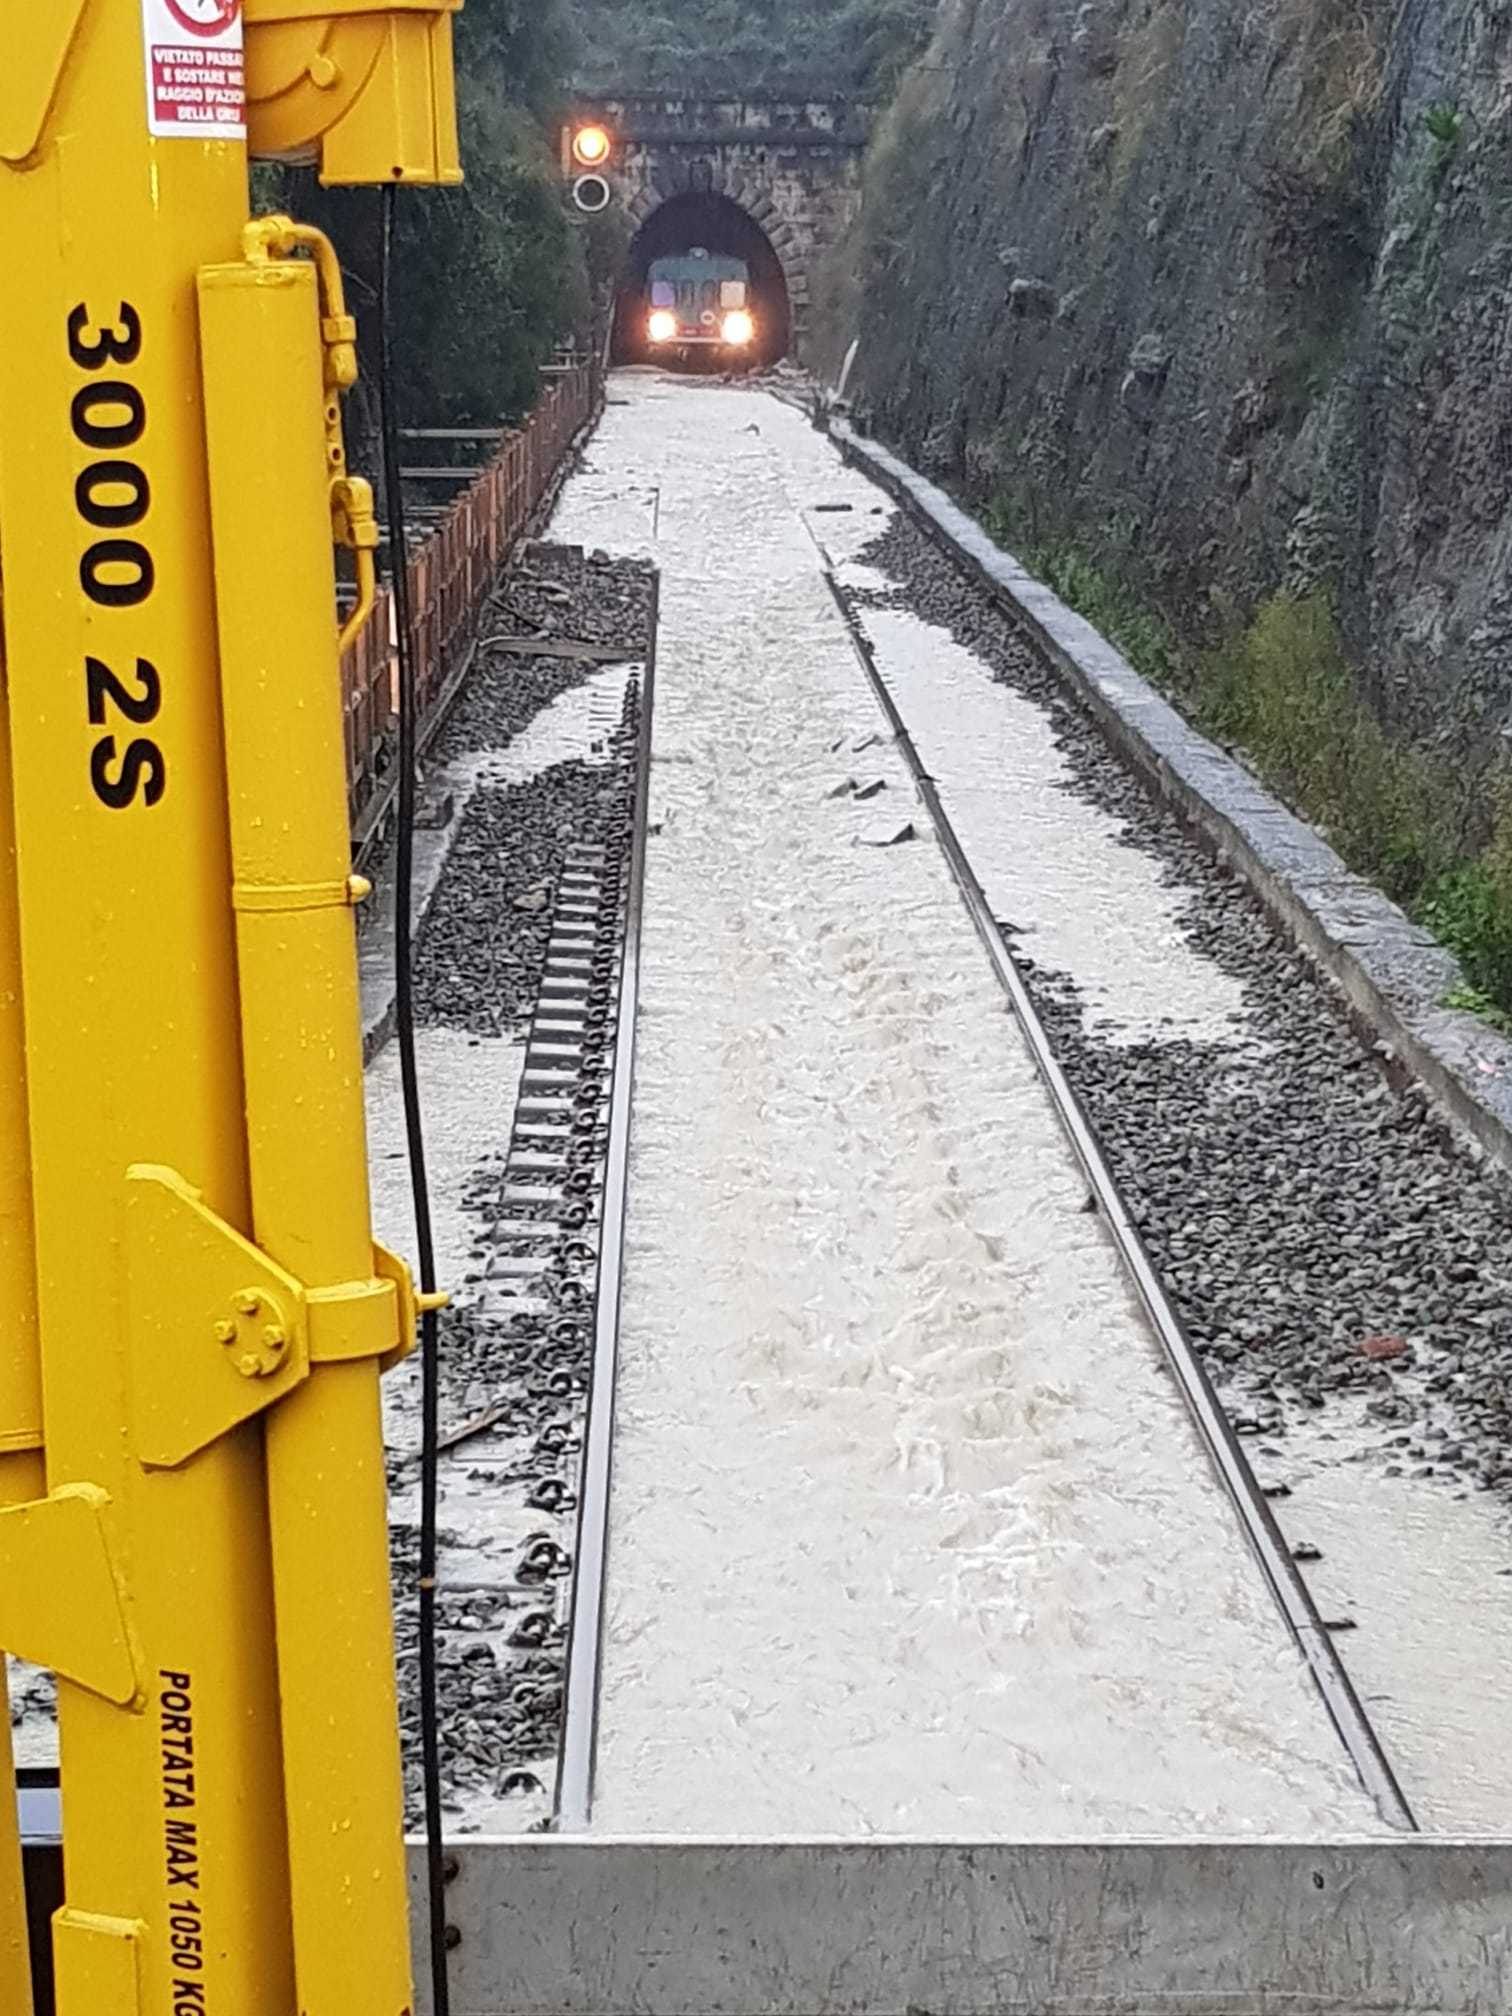 Maltempo: Treno bloccato in galleria Lamezia-Catanzaro per allagamento, intervento dei VVF (Video)